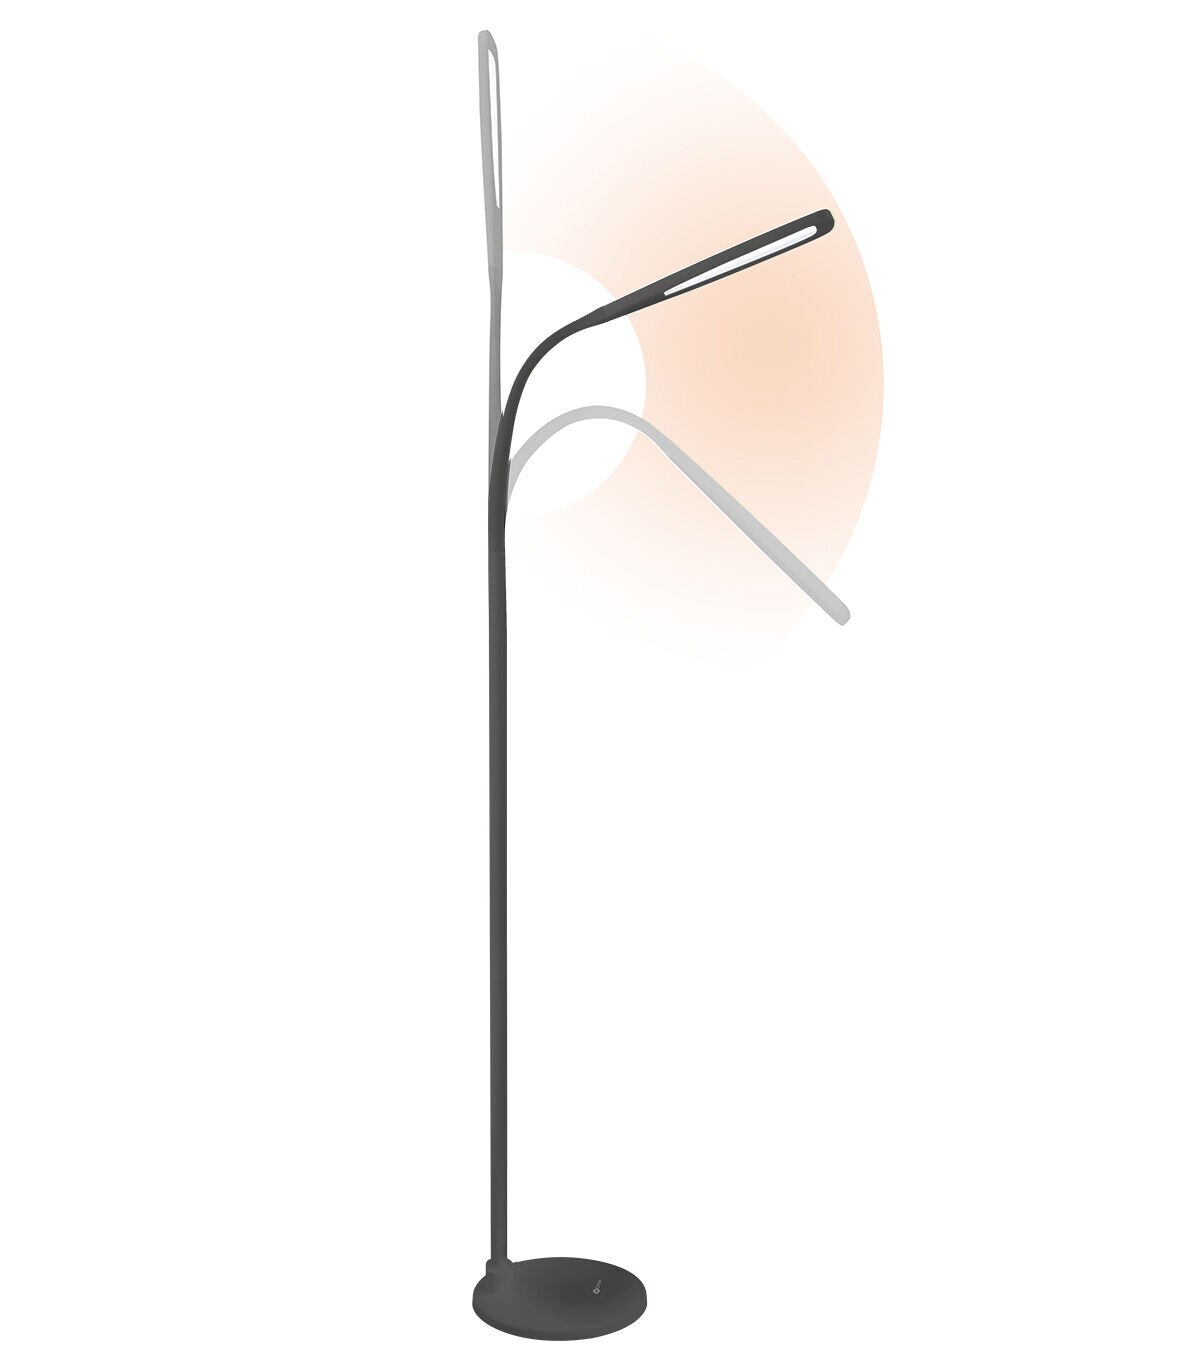 OttLite 823WG4 24W Extended Reach Floor Lamp